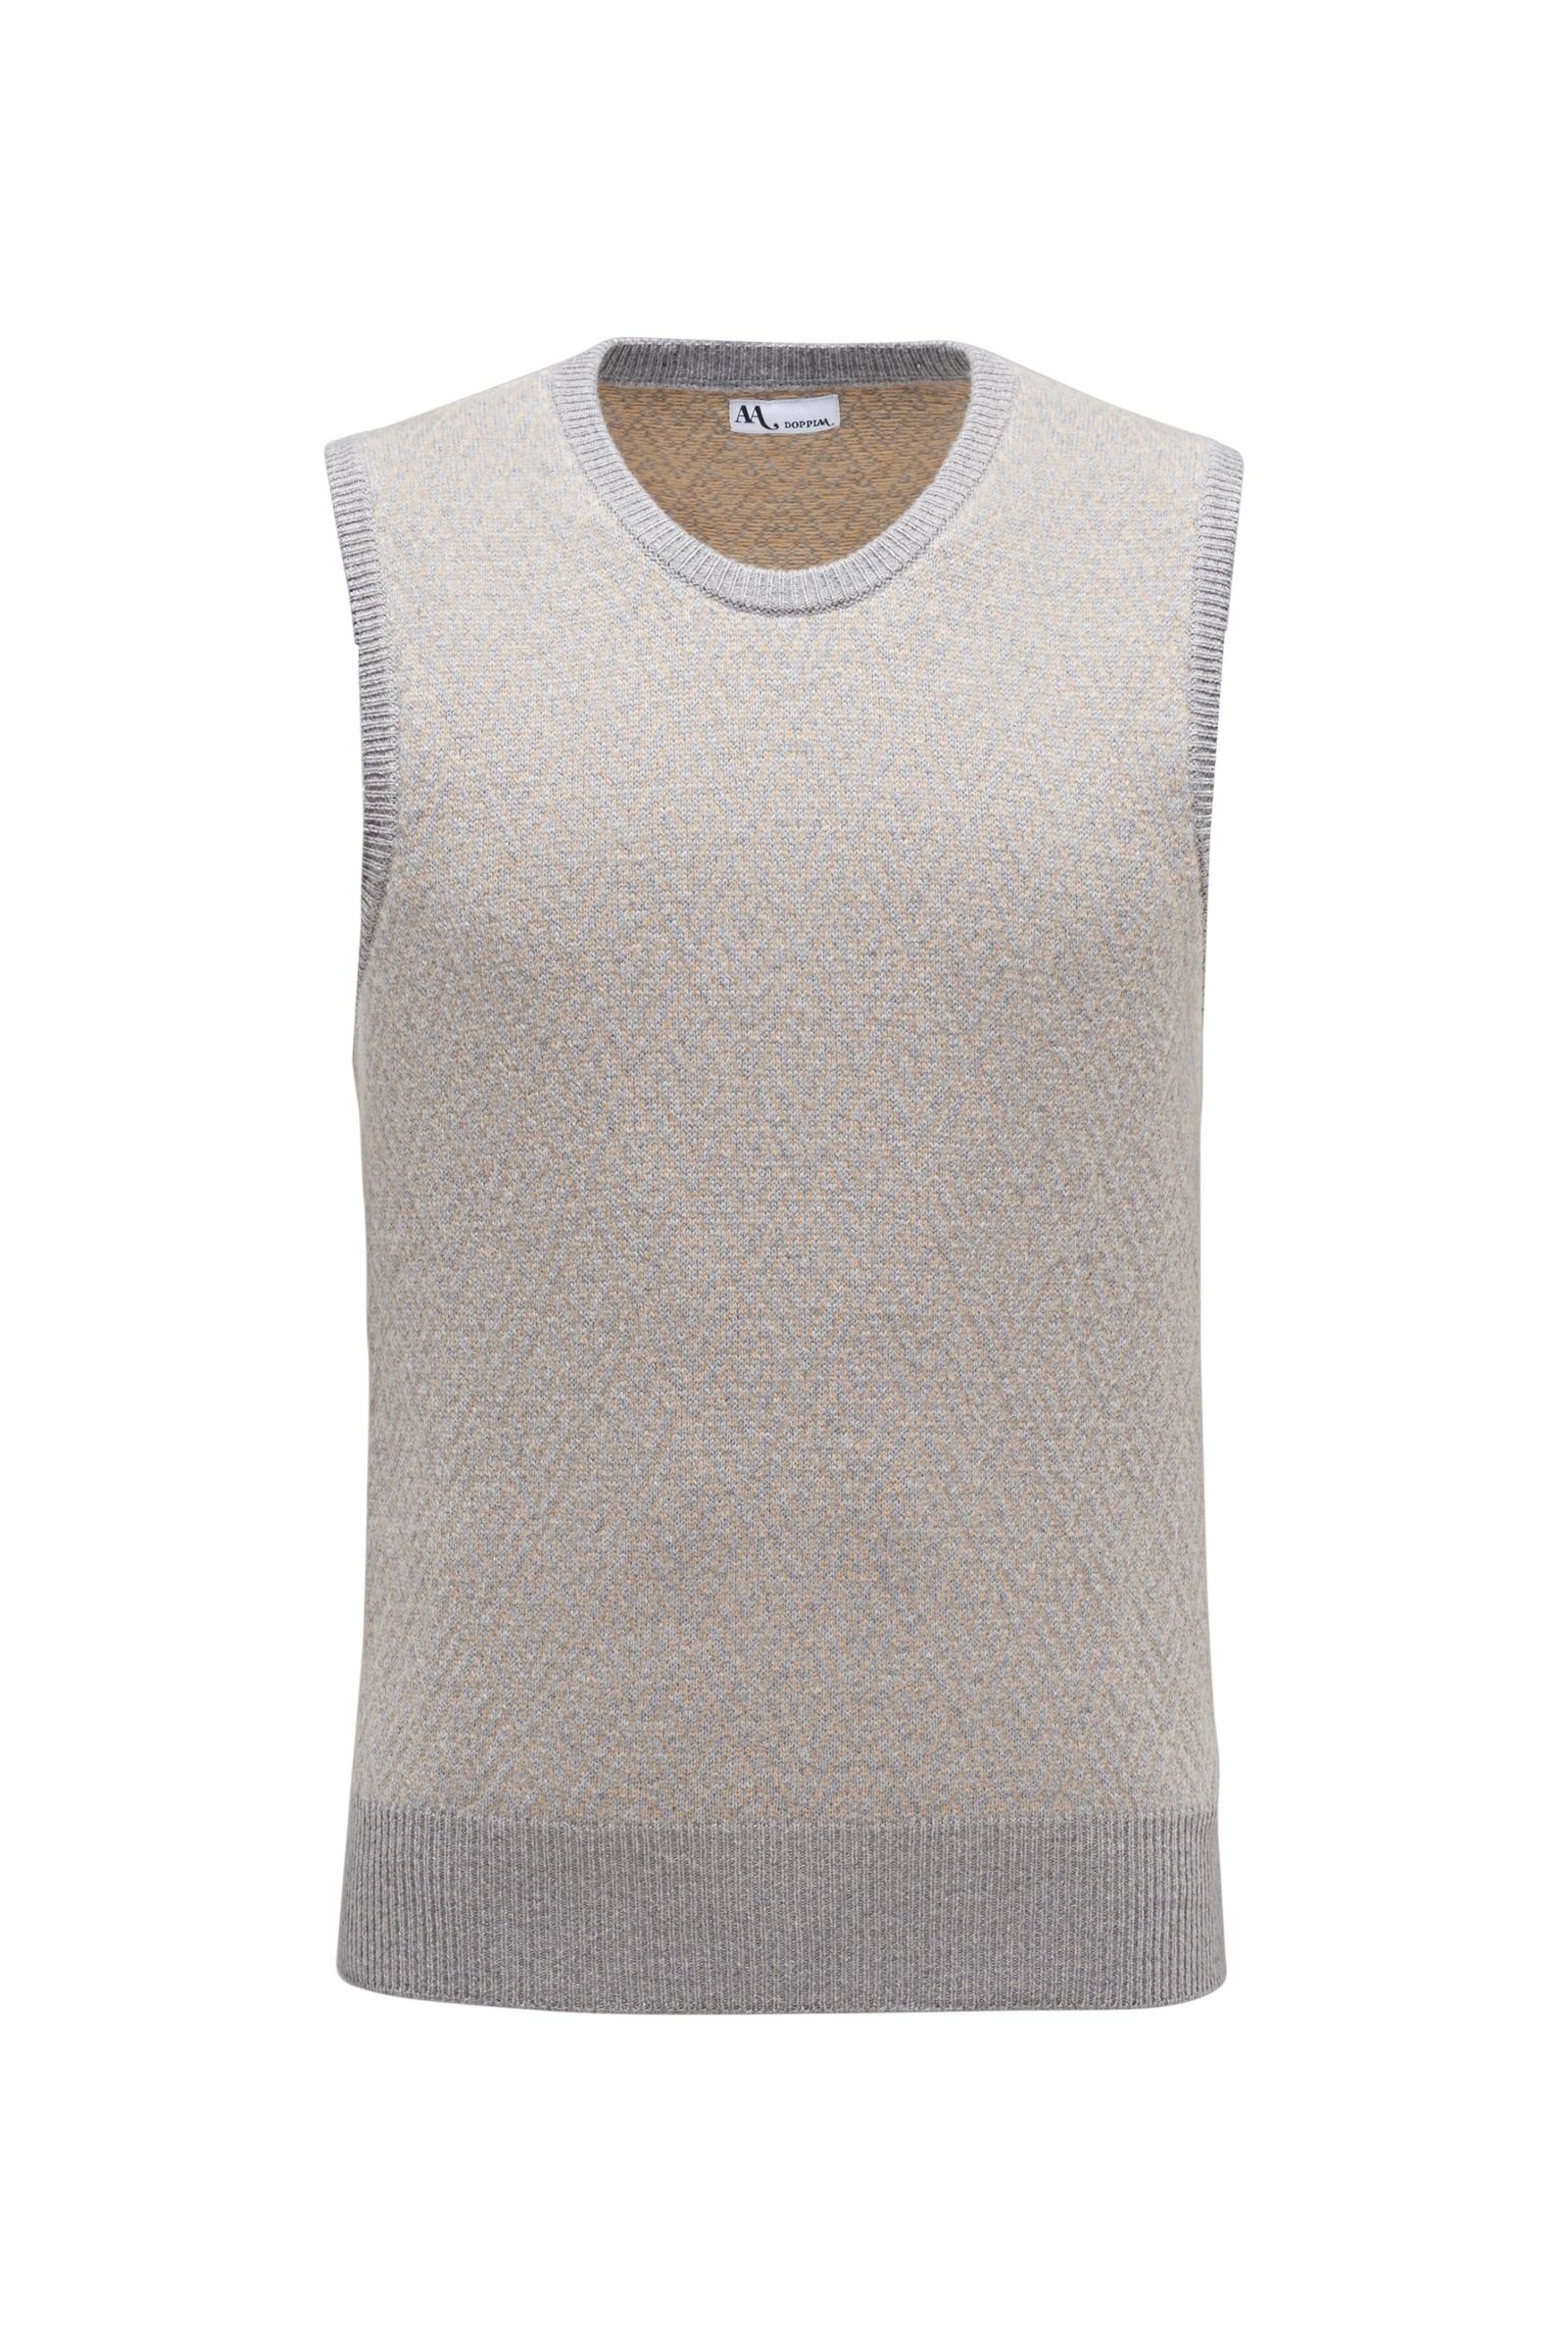 Crew neck sweater vest 'Aadria' beige/light grey patterned